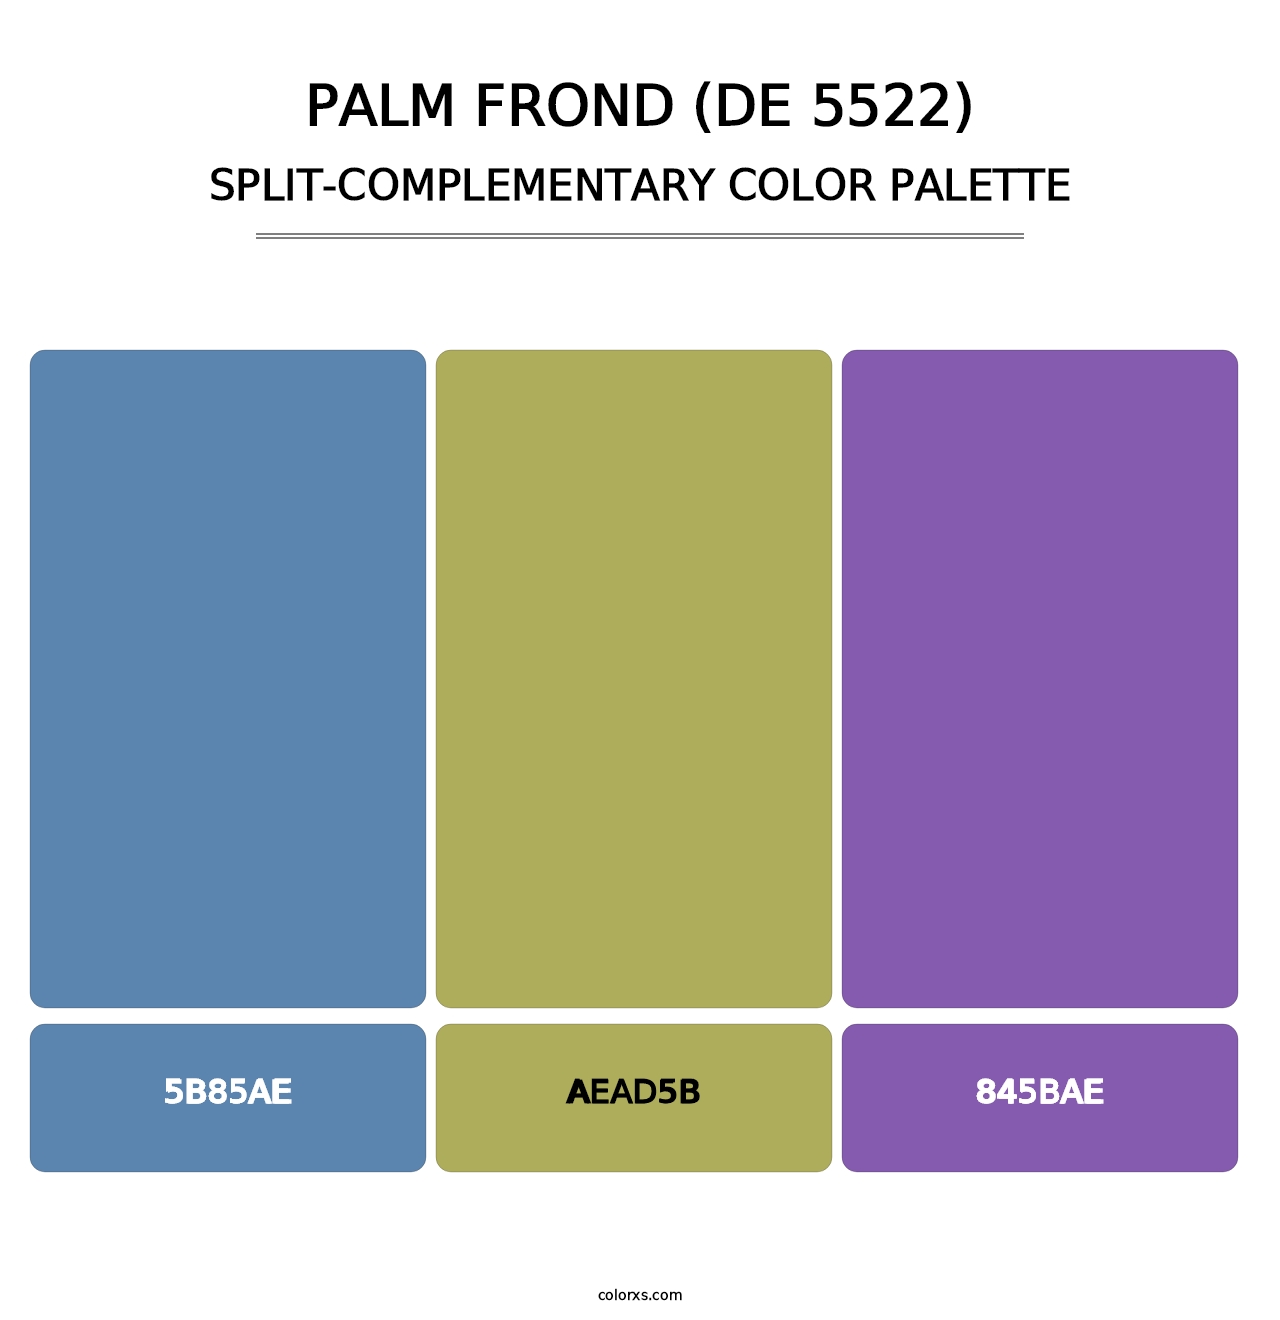 Palm Frond (DE 5522) - Split-Complementary Color Palette